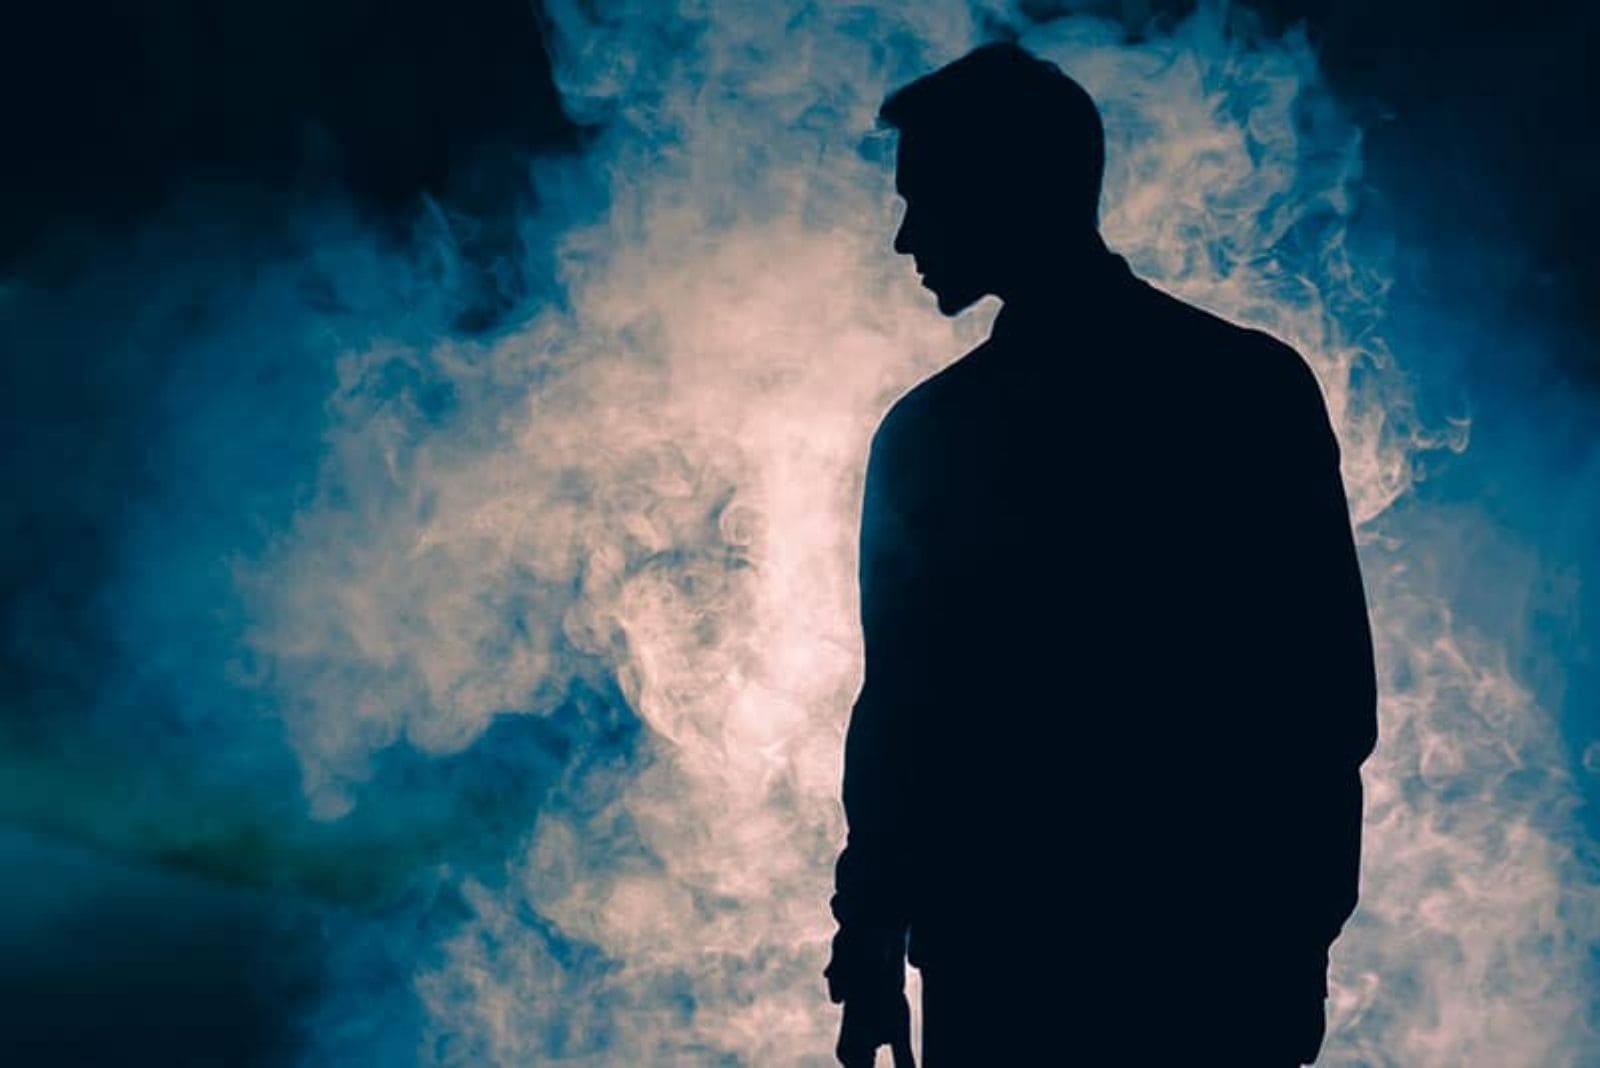 giovane uomo in piedi nell'oscurità con il fumo davanti a sé